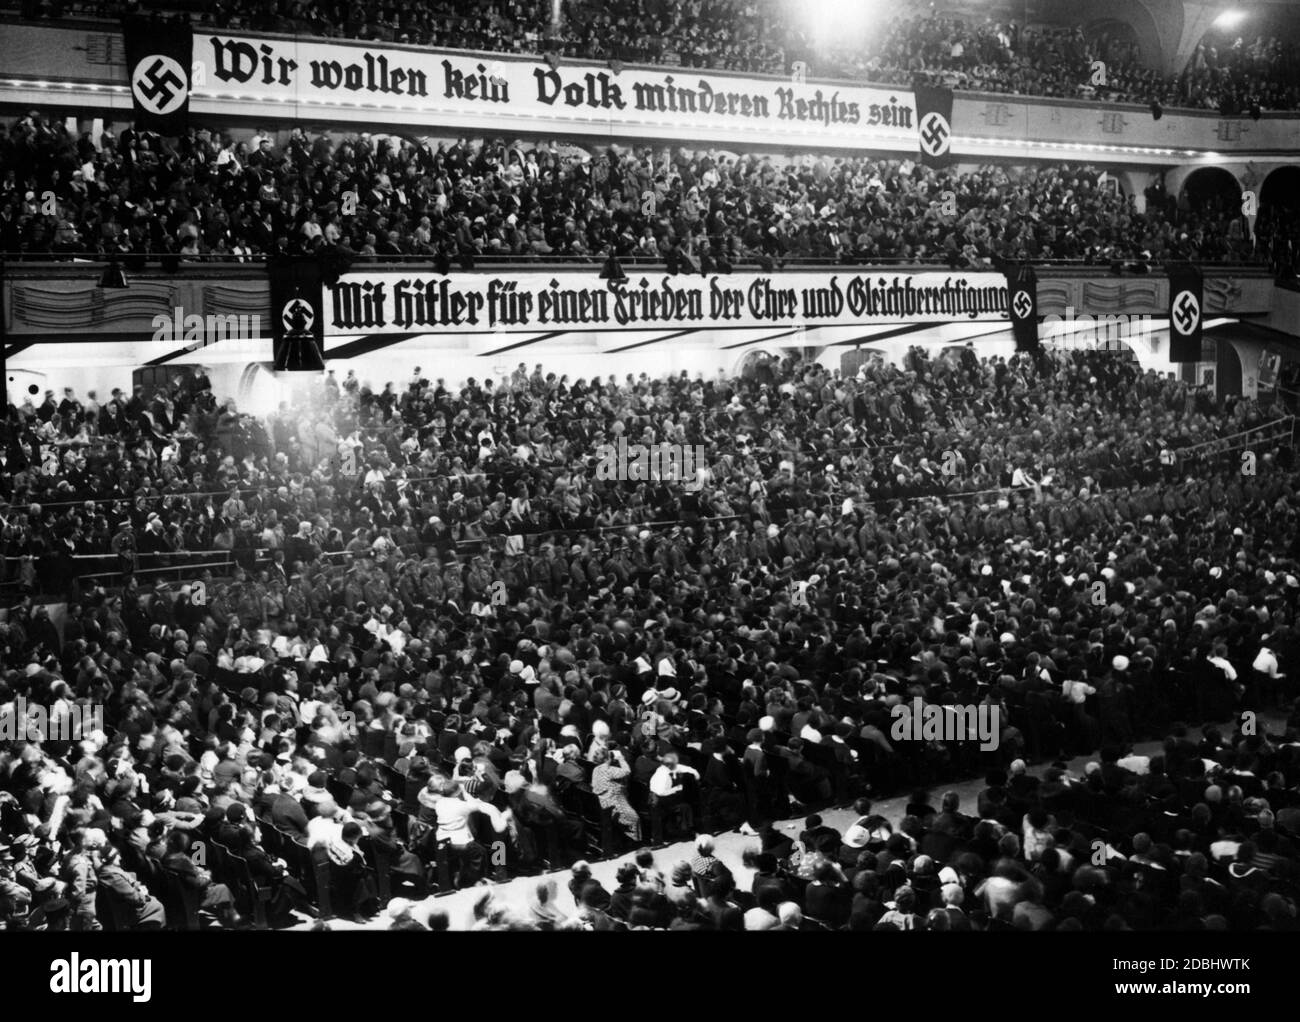 'Banner mit den Worten 'Wir wollen kein Volk minderen Rechtes sein'' über einem Banner mit der Aufschrift 'mit Hitler für einen Frieden der Ehre und Gleichberechtigung'' bei einer Wahlveranstaltung der SA.' Stockfoto